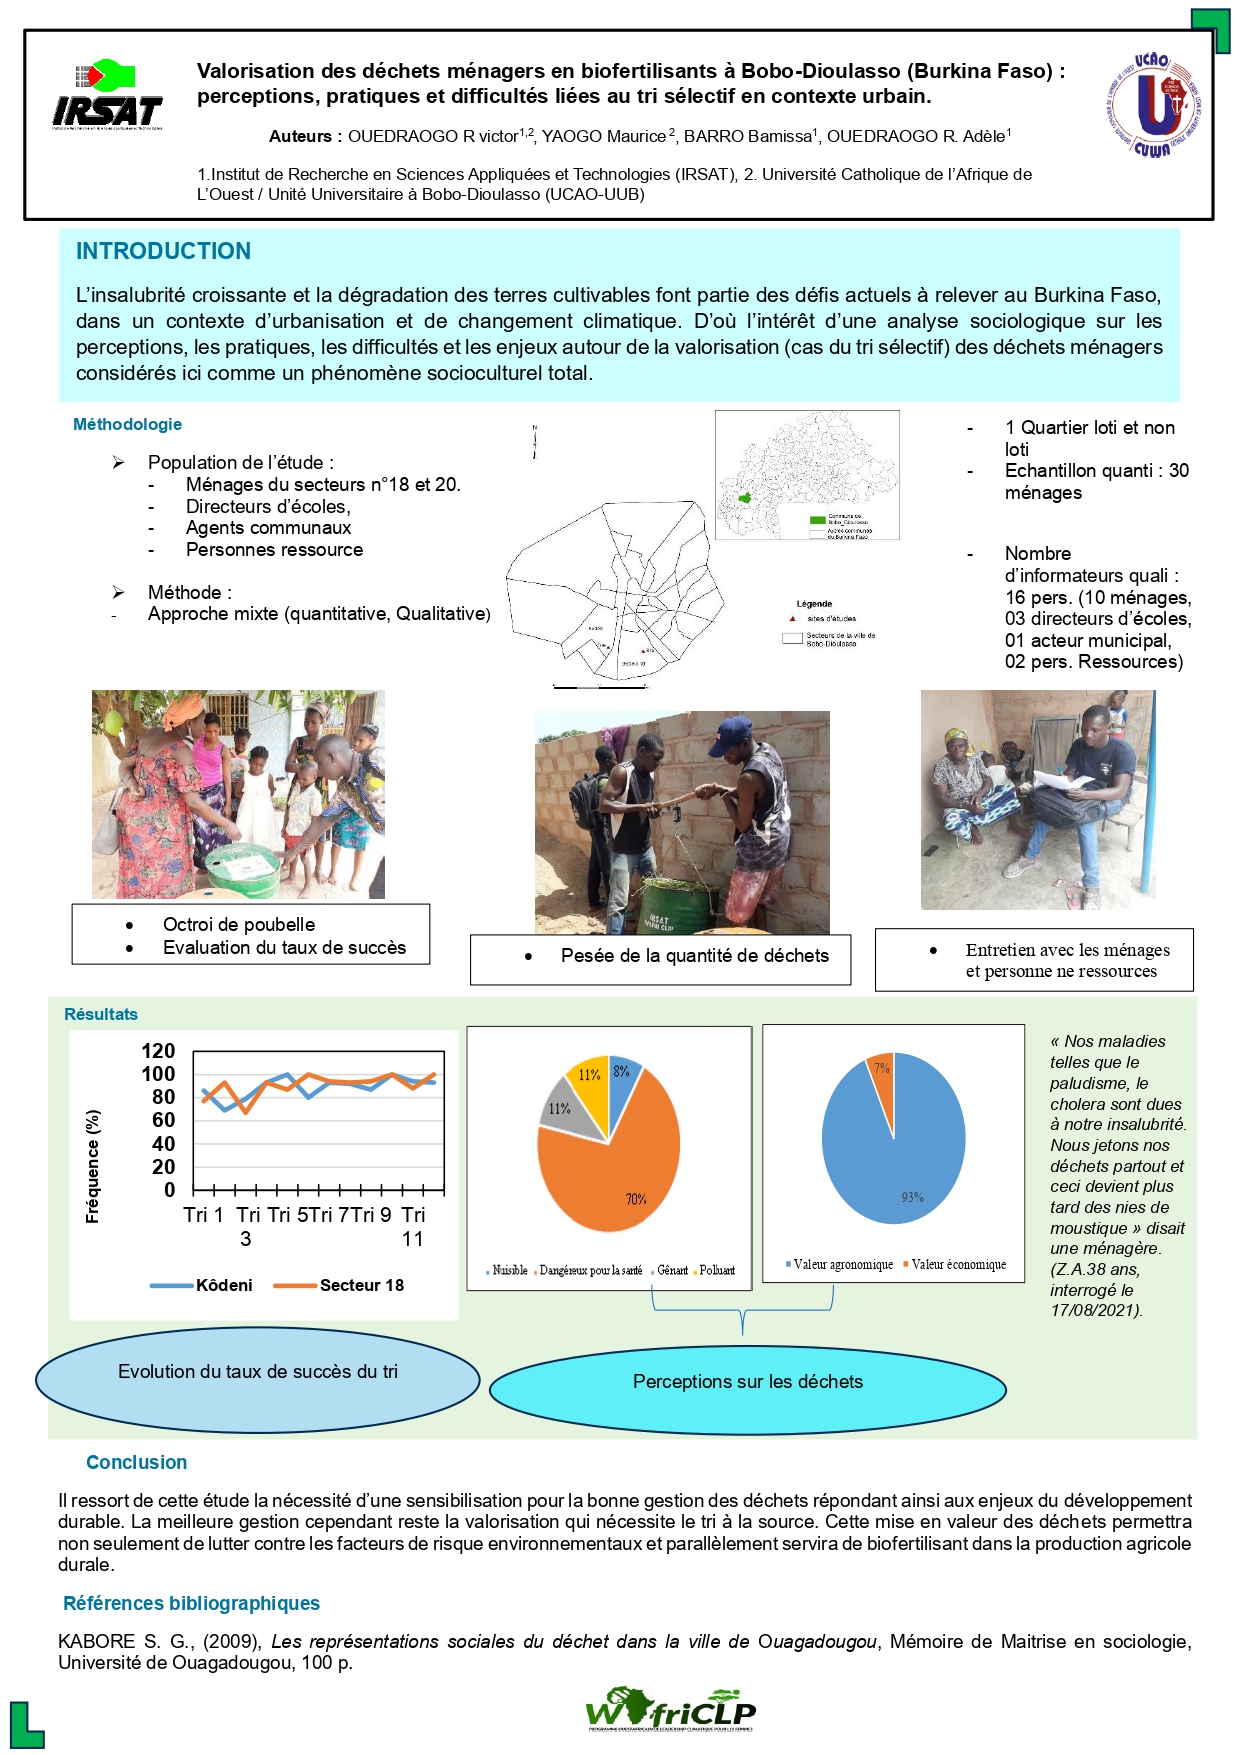  Valorisation des déchets ménagers en biofertilisants à Bobo-Dioulasso (Burkina Faso) : perceptions, pratiques et difficultés liées au tri sélectif en contexte urbain